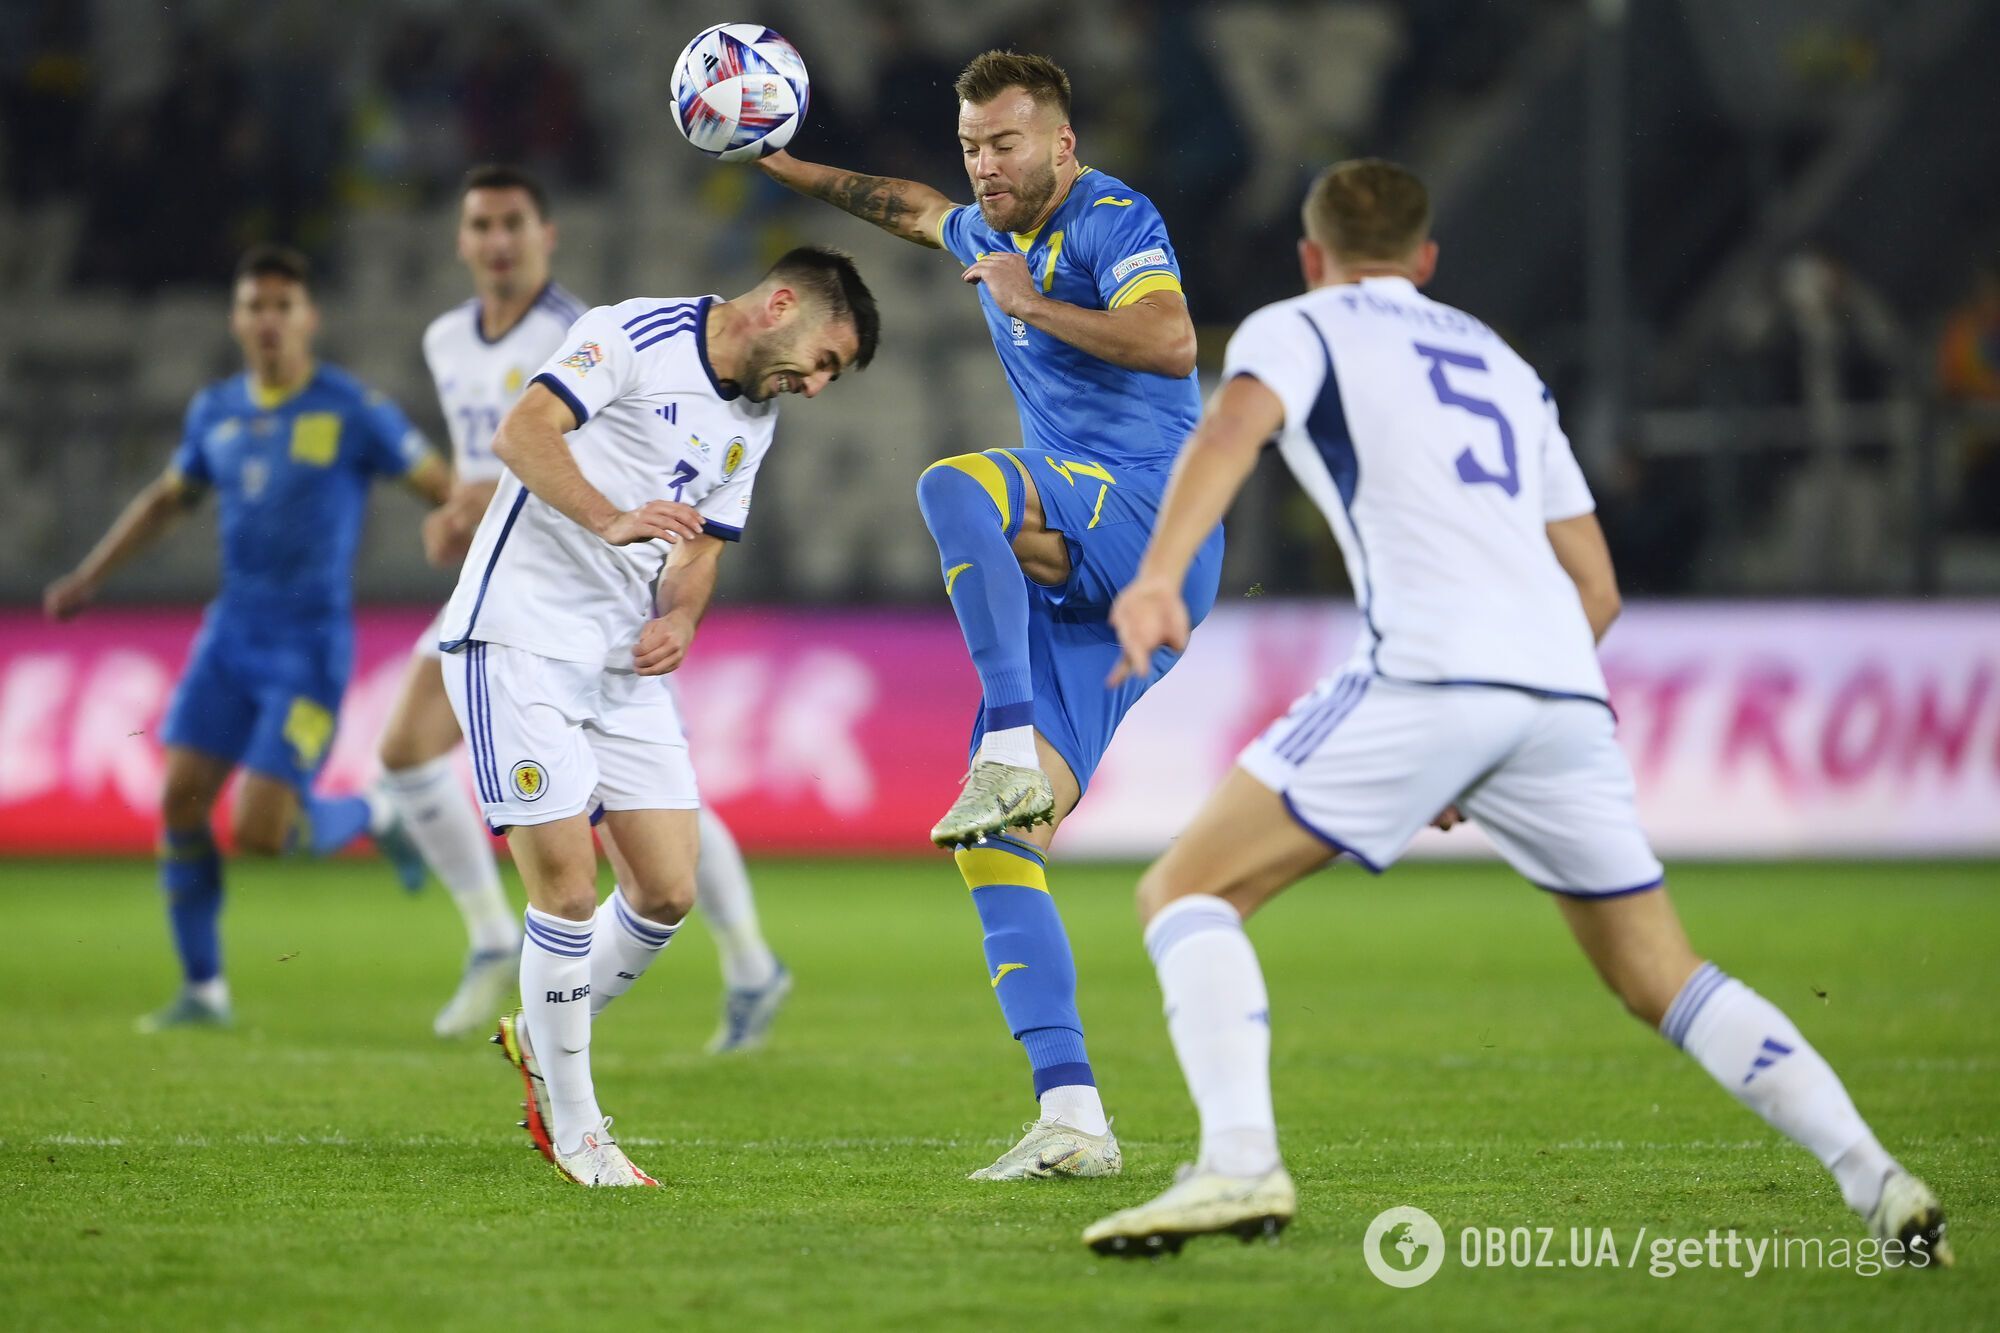 Сборная Украины по футболу осталась без победы и не смогла выйти в элиту Лиги наций